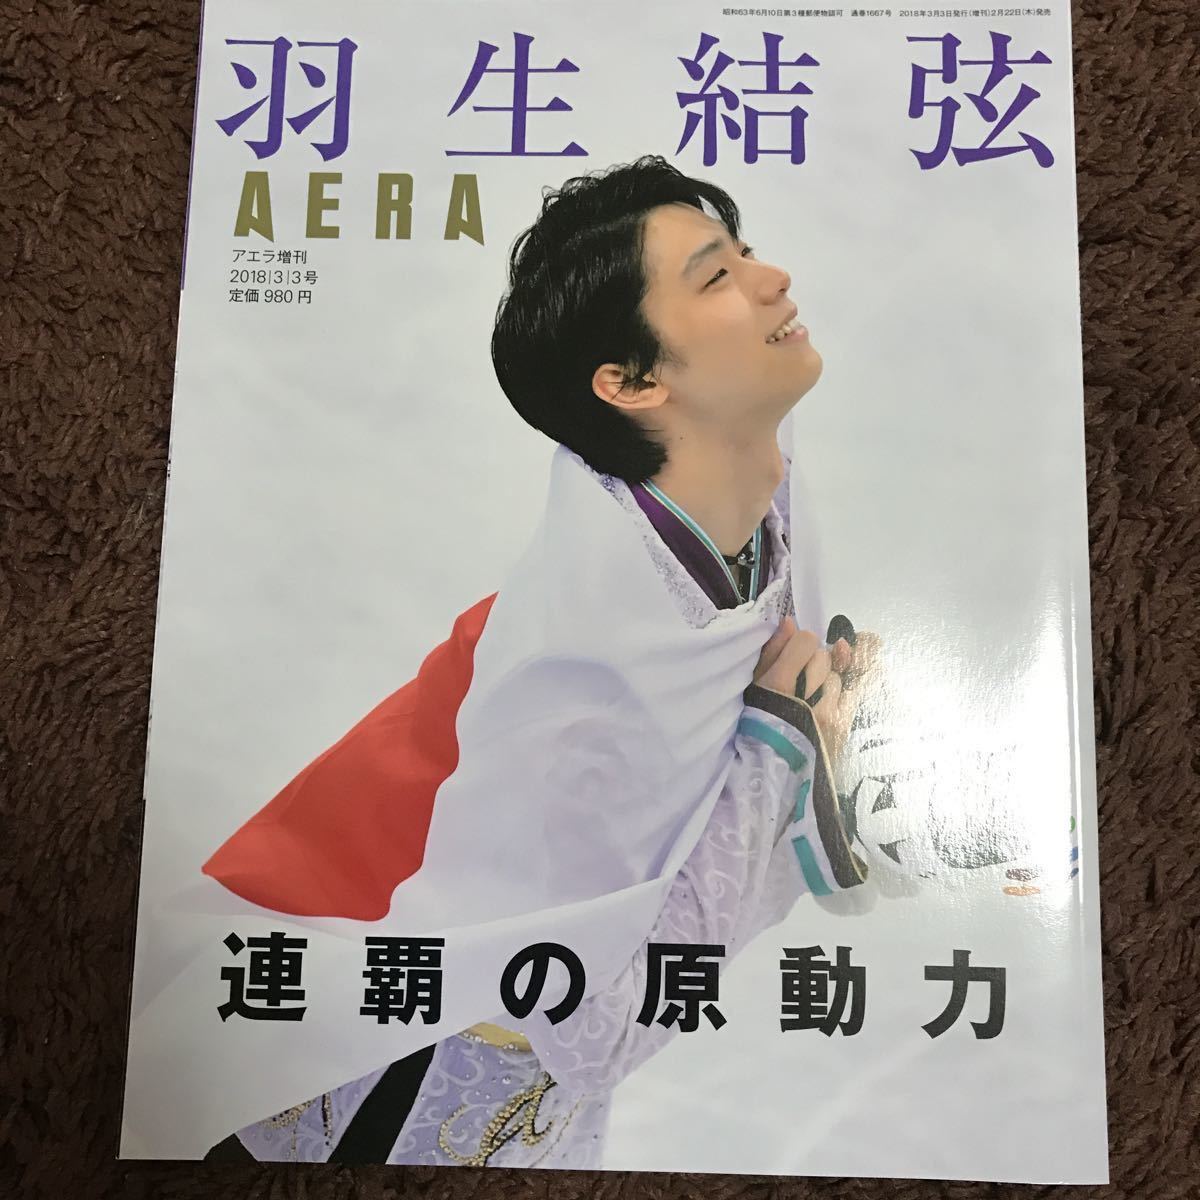 AERA アエラ増刊 羽生結弦 連覇の原動力 2018/3/3号(AERA)｜売買された 